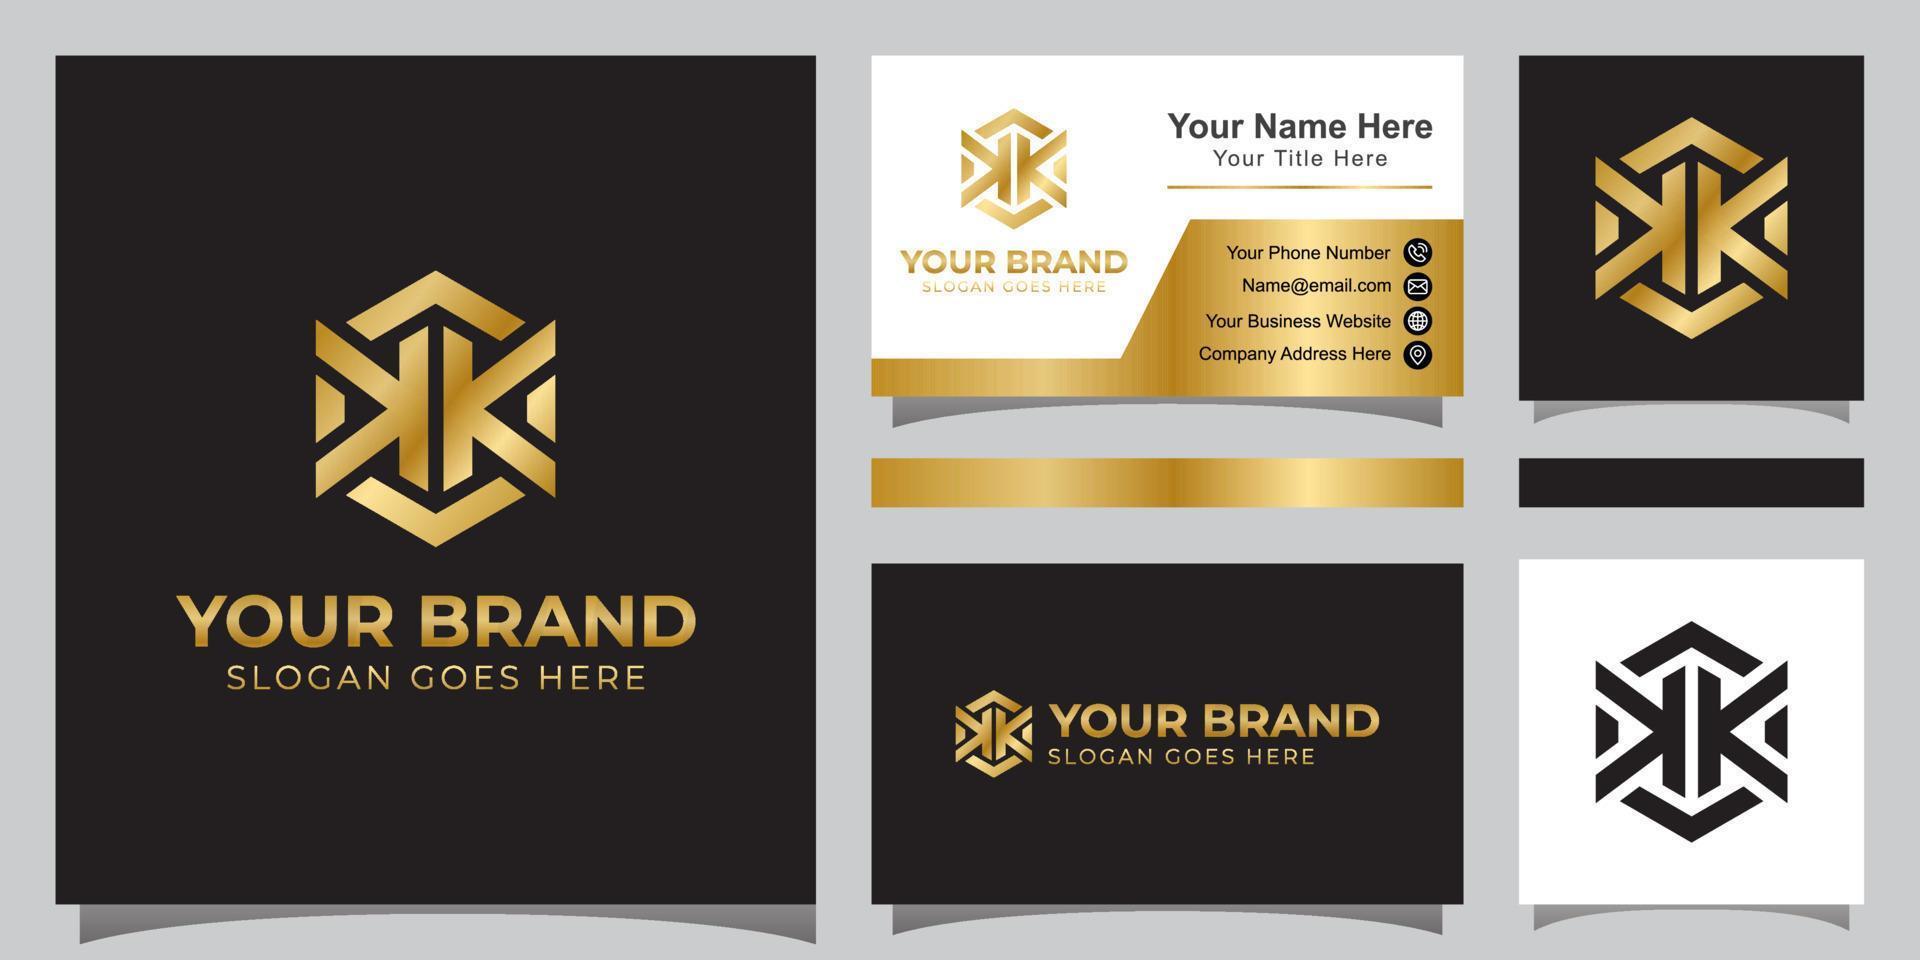 letra elegante doble k con logotipo hexagonal para su marca comercial y tarjeta de presentación vector